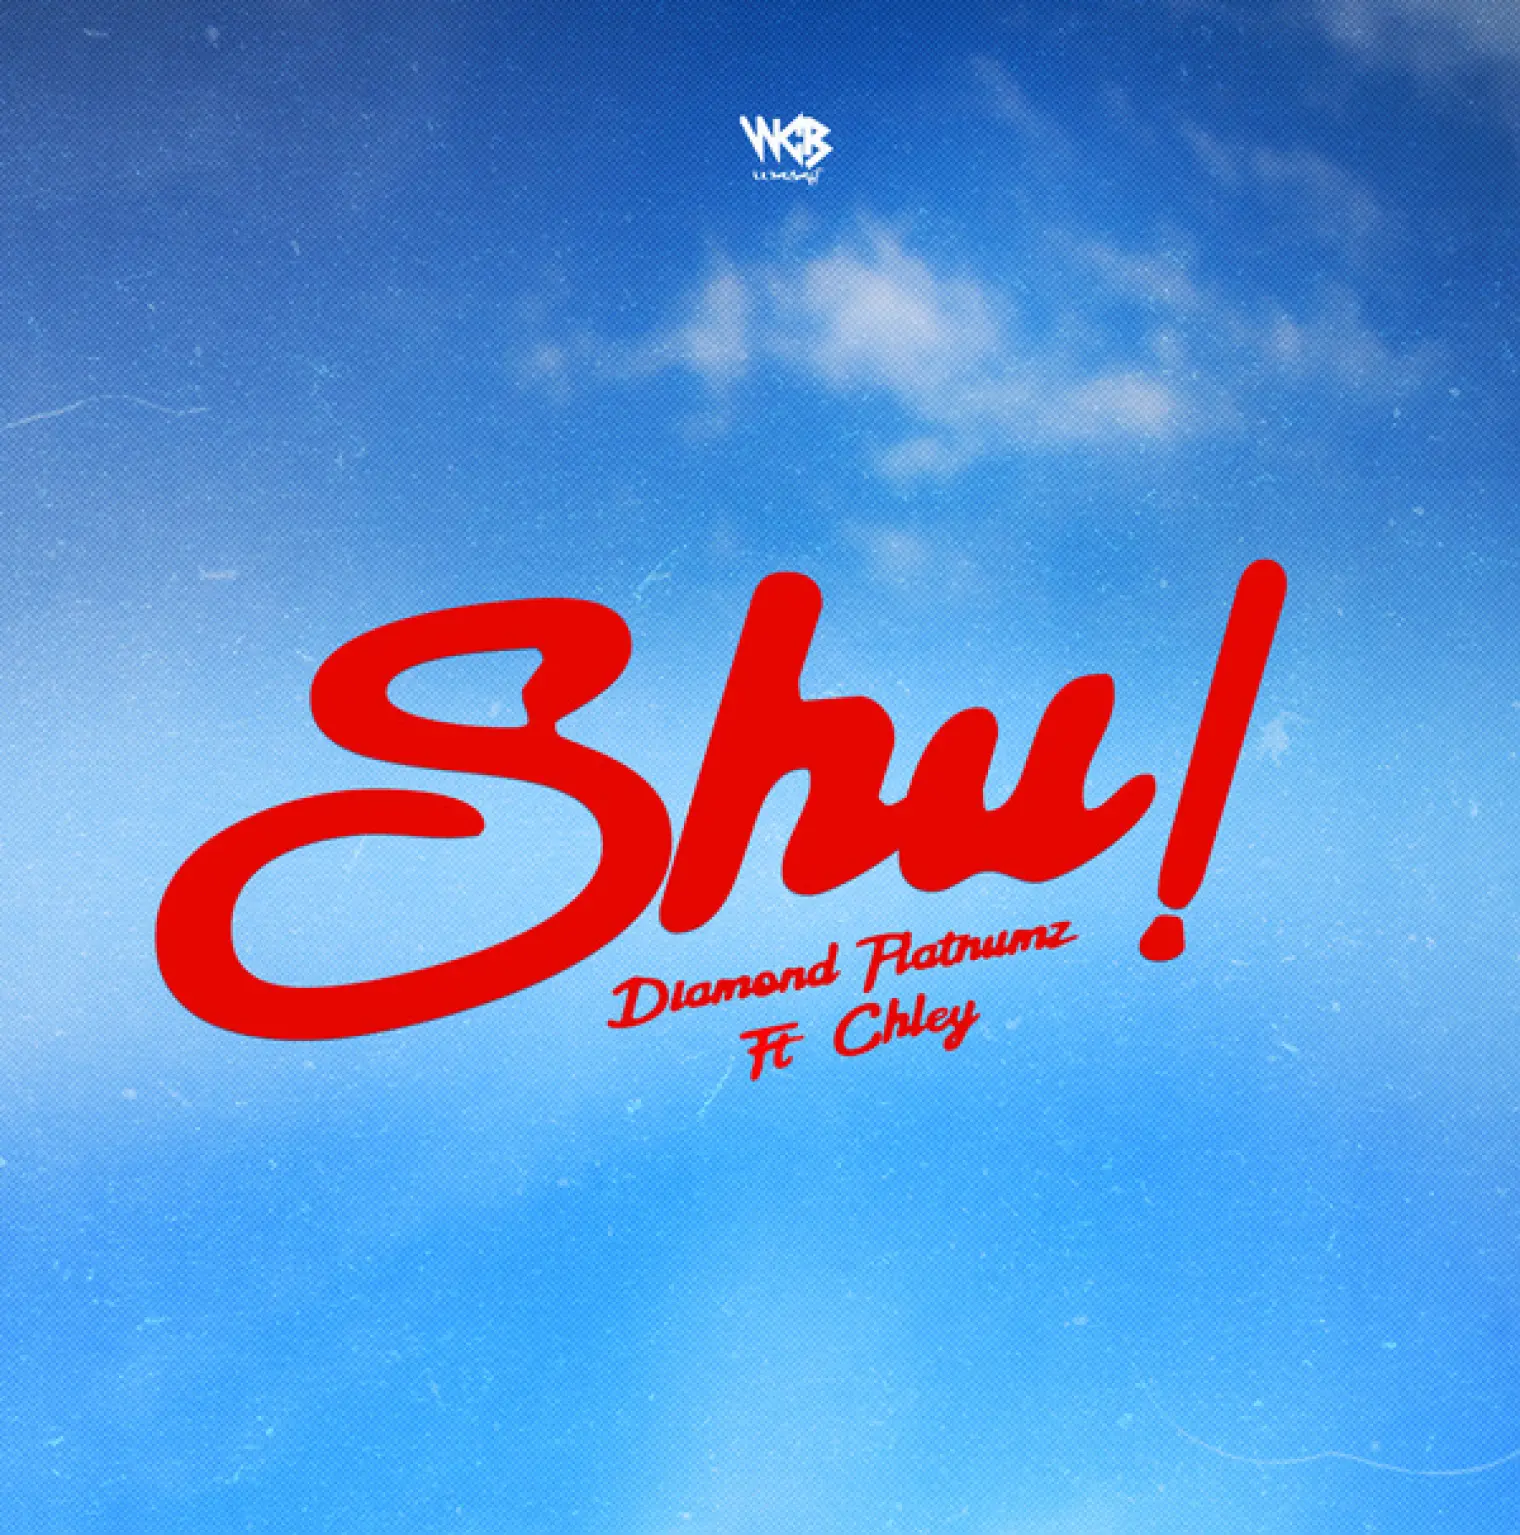 Shu! (feat. Chley) -  Diamond Platnumz 